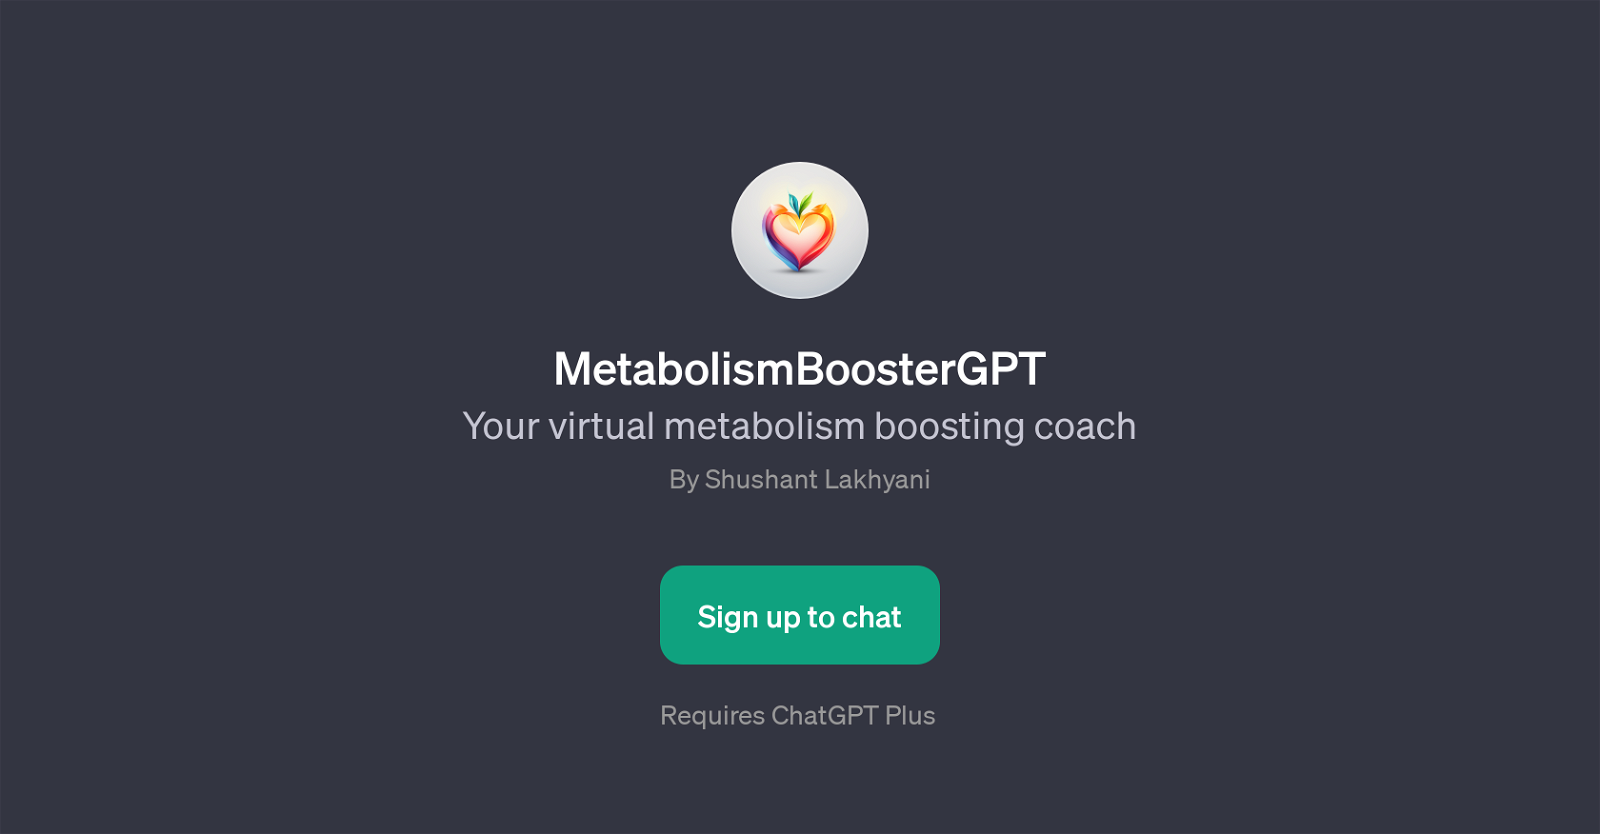 MetabolismBoosterGPT website